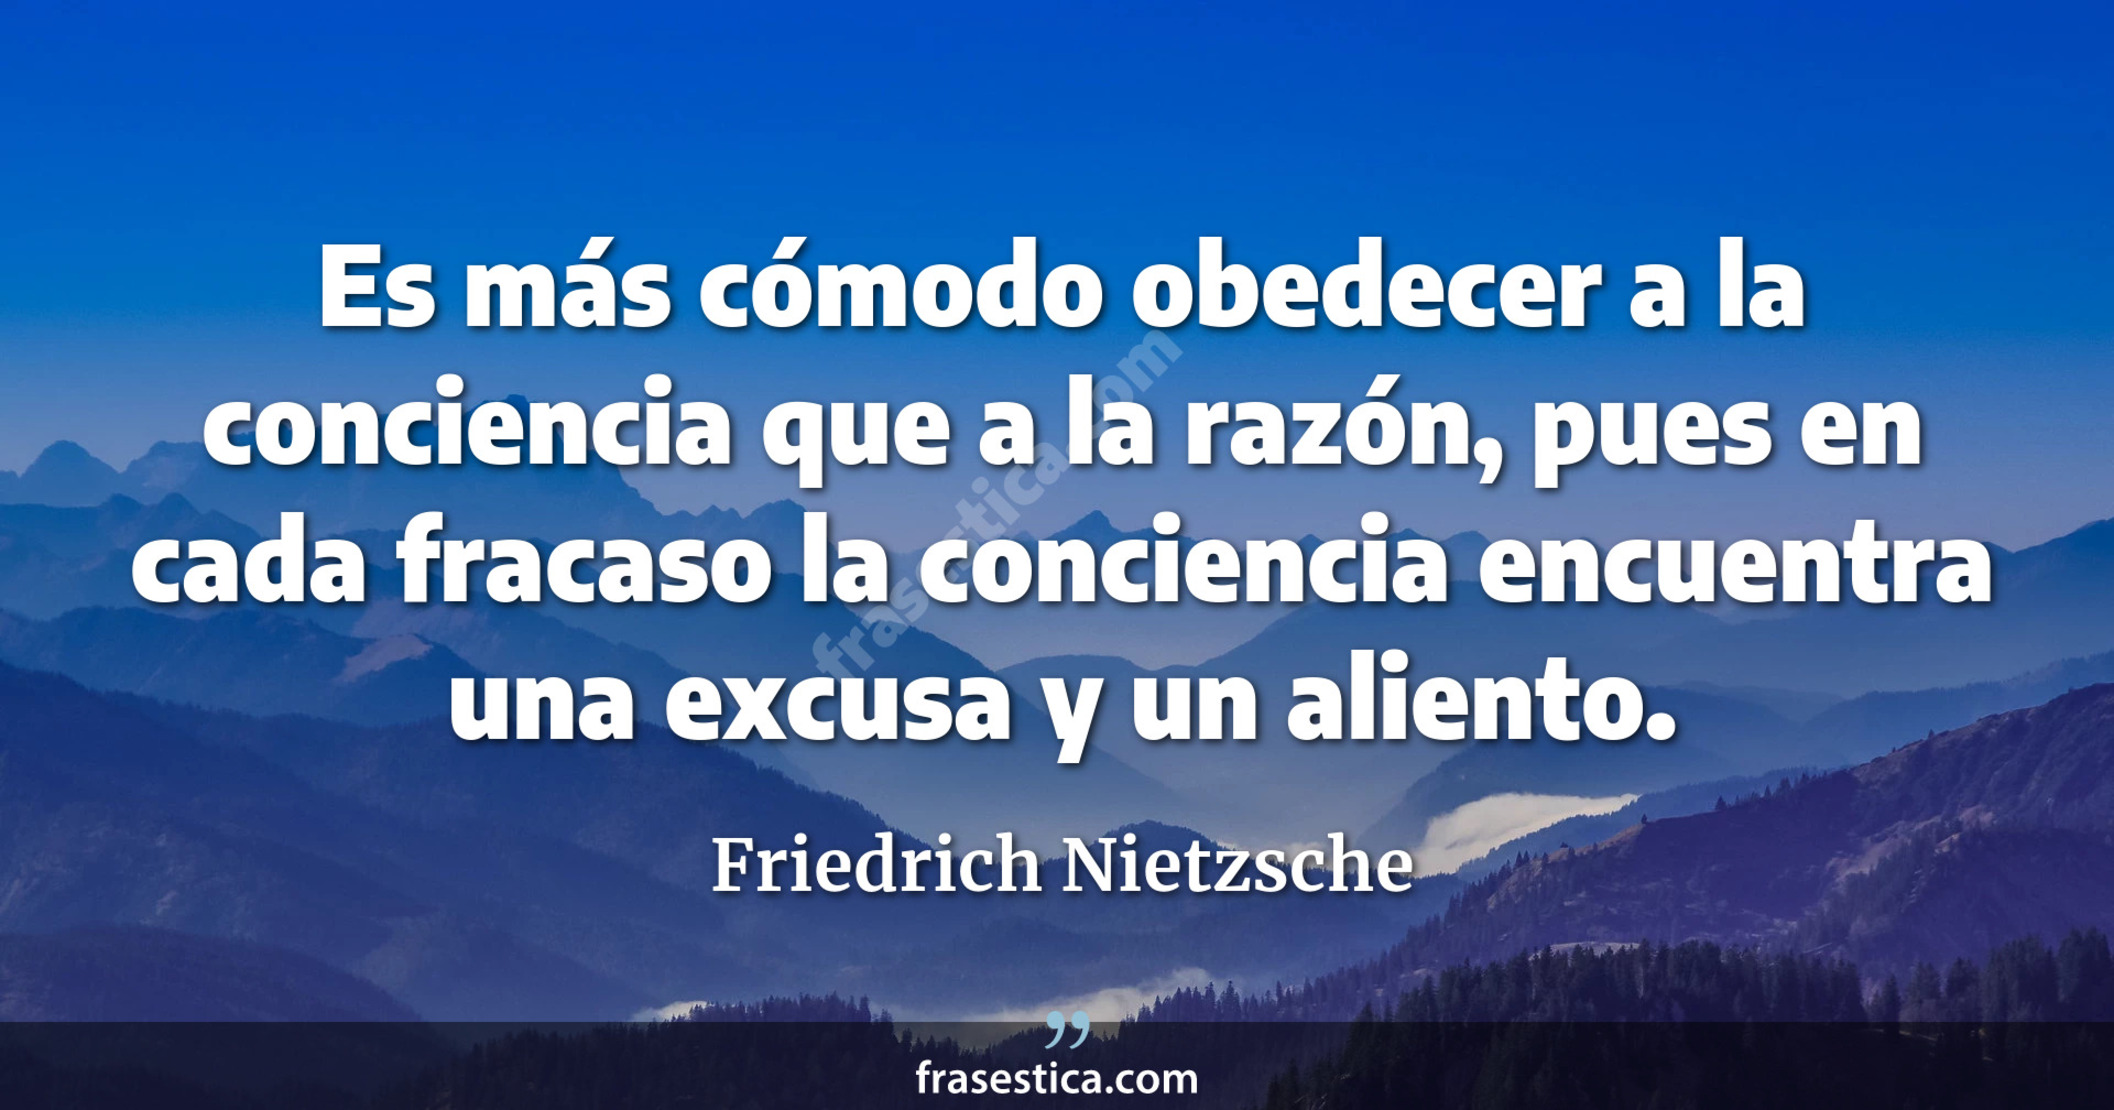 Es más cómodo obedecer a la conciencia que a la razón, pues en cada fracaso la conciencia encuentra una excusa y un aliento. - Friedrich Nietzsche